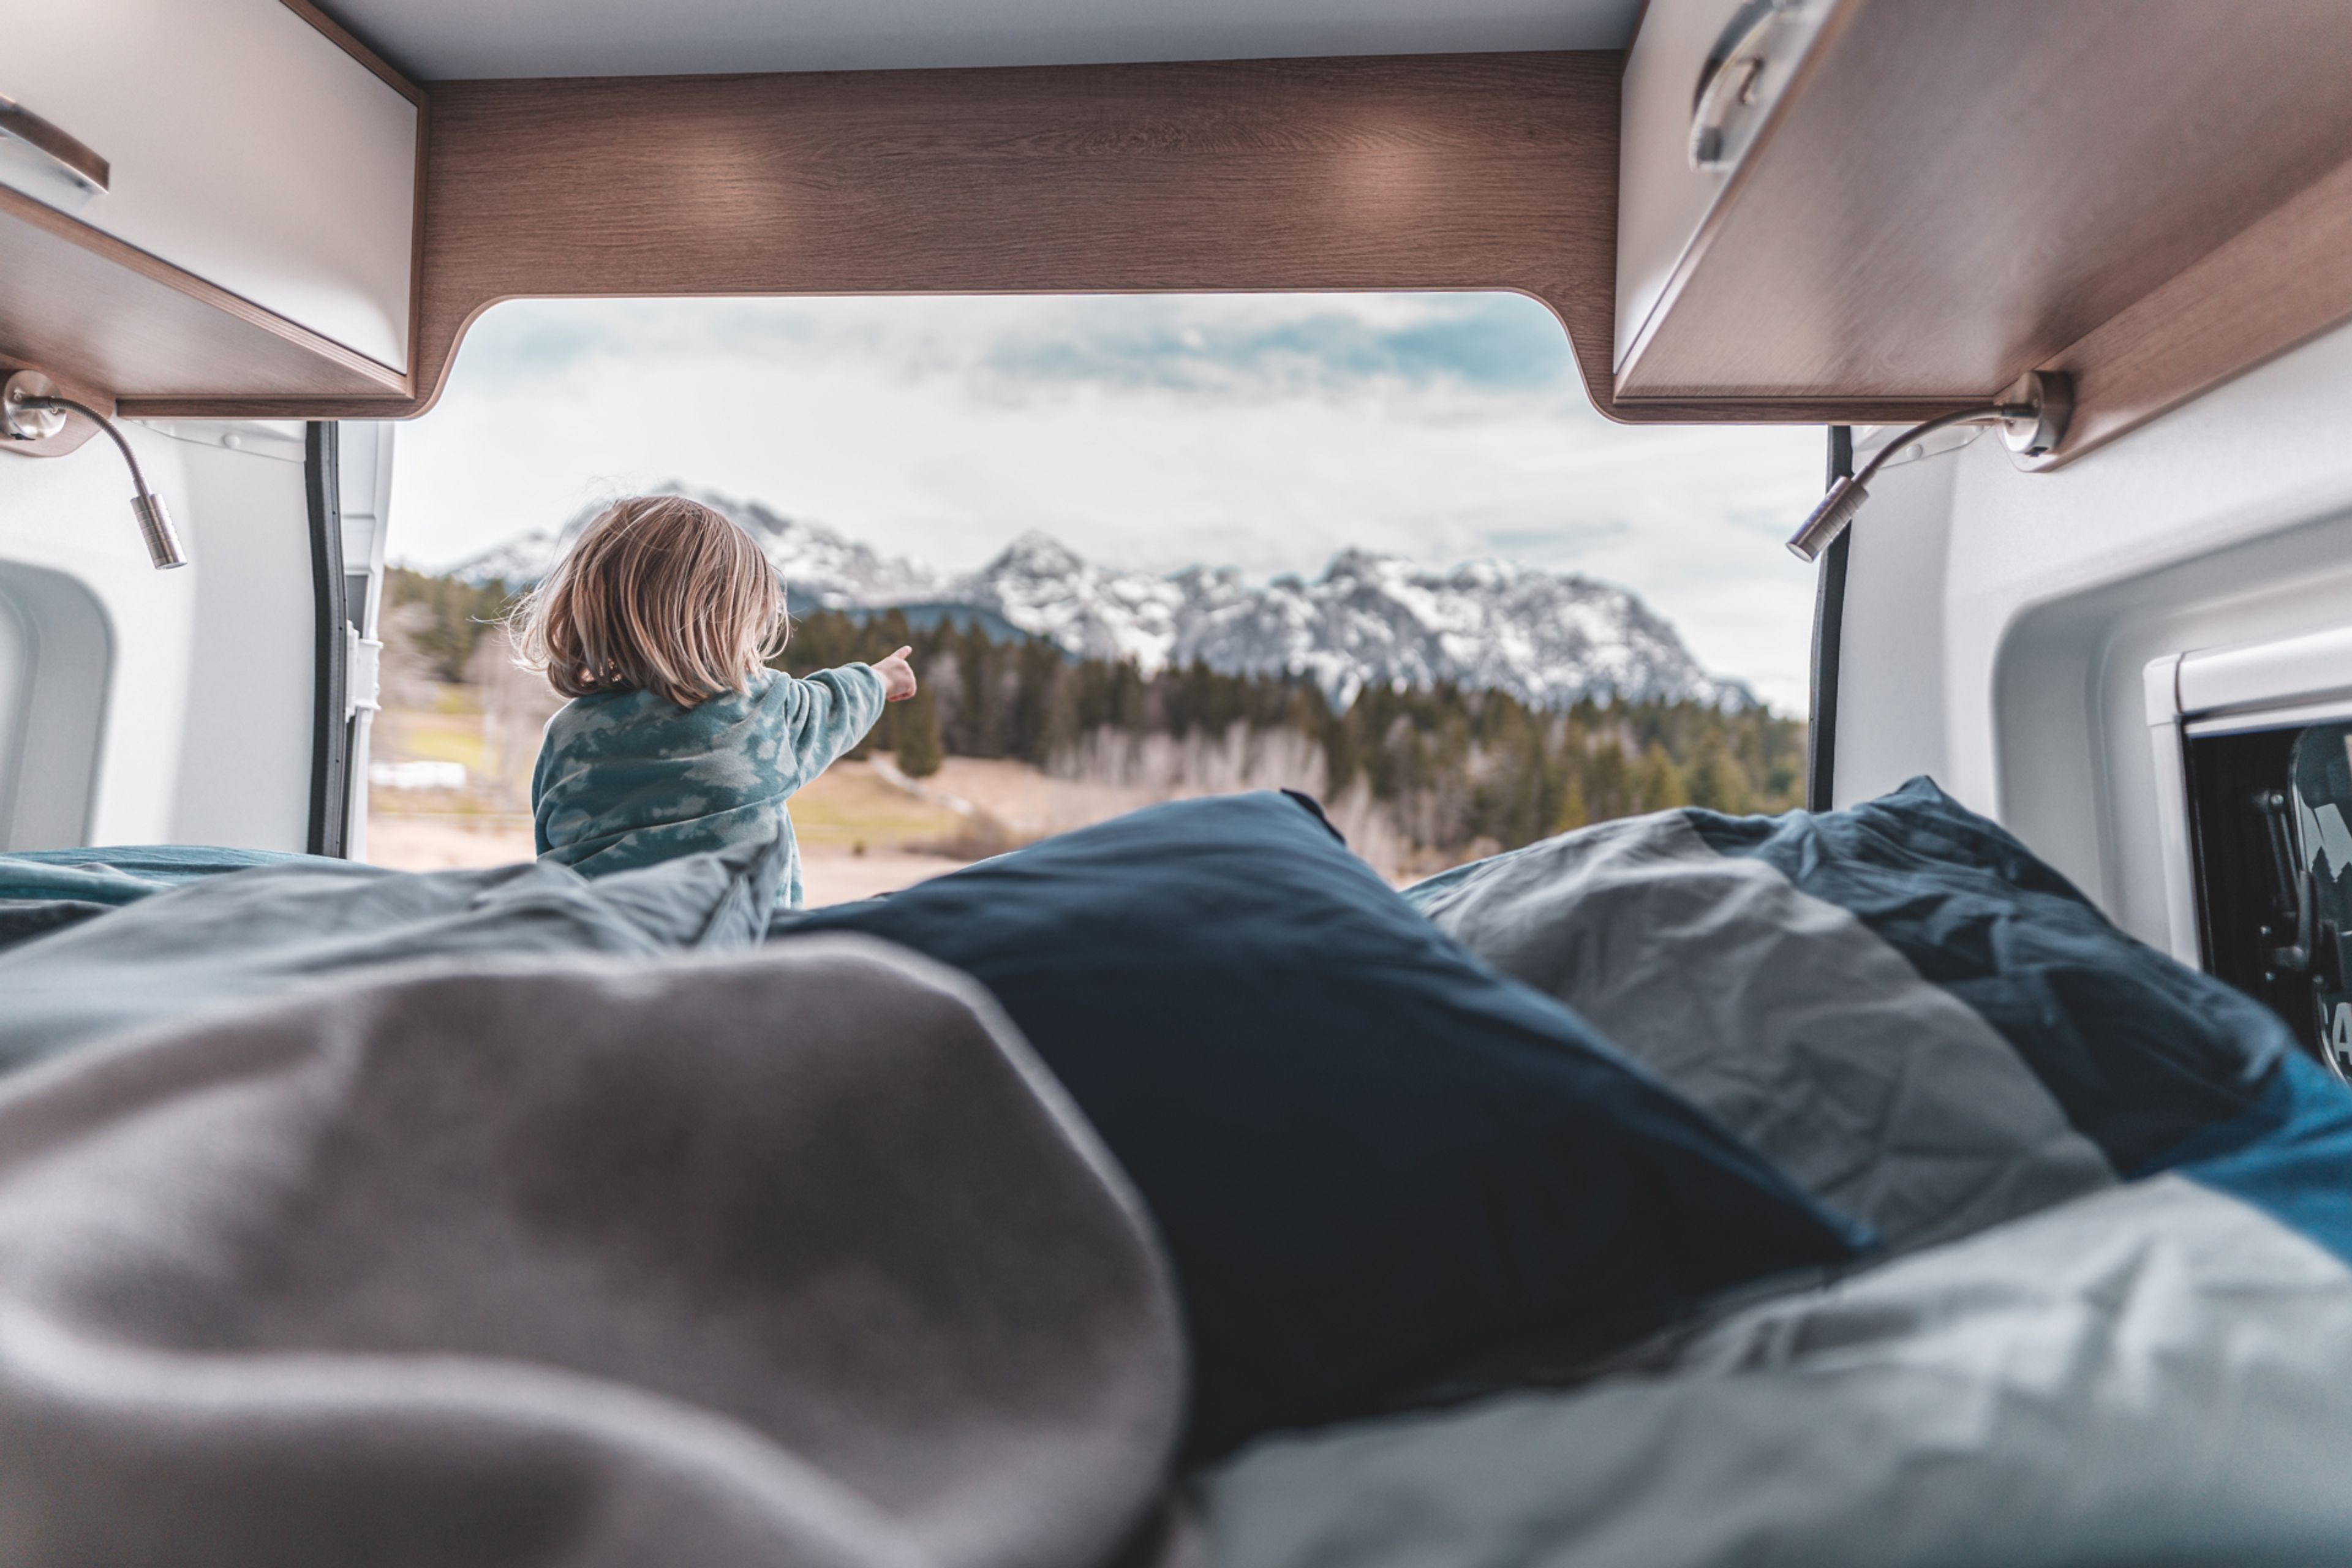 Campervan Comfort: Is a campervan bed comfortable?